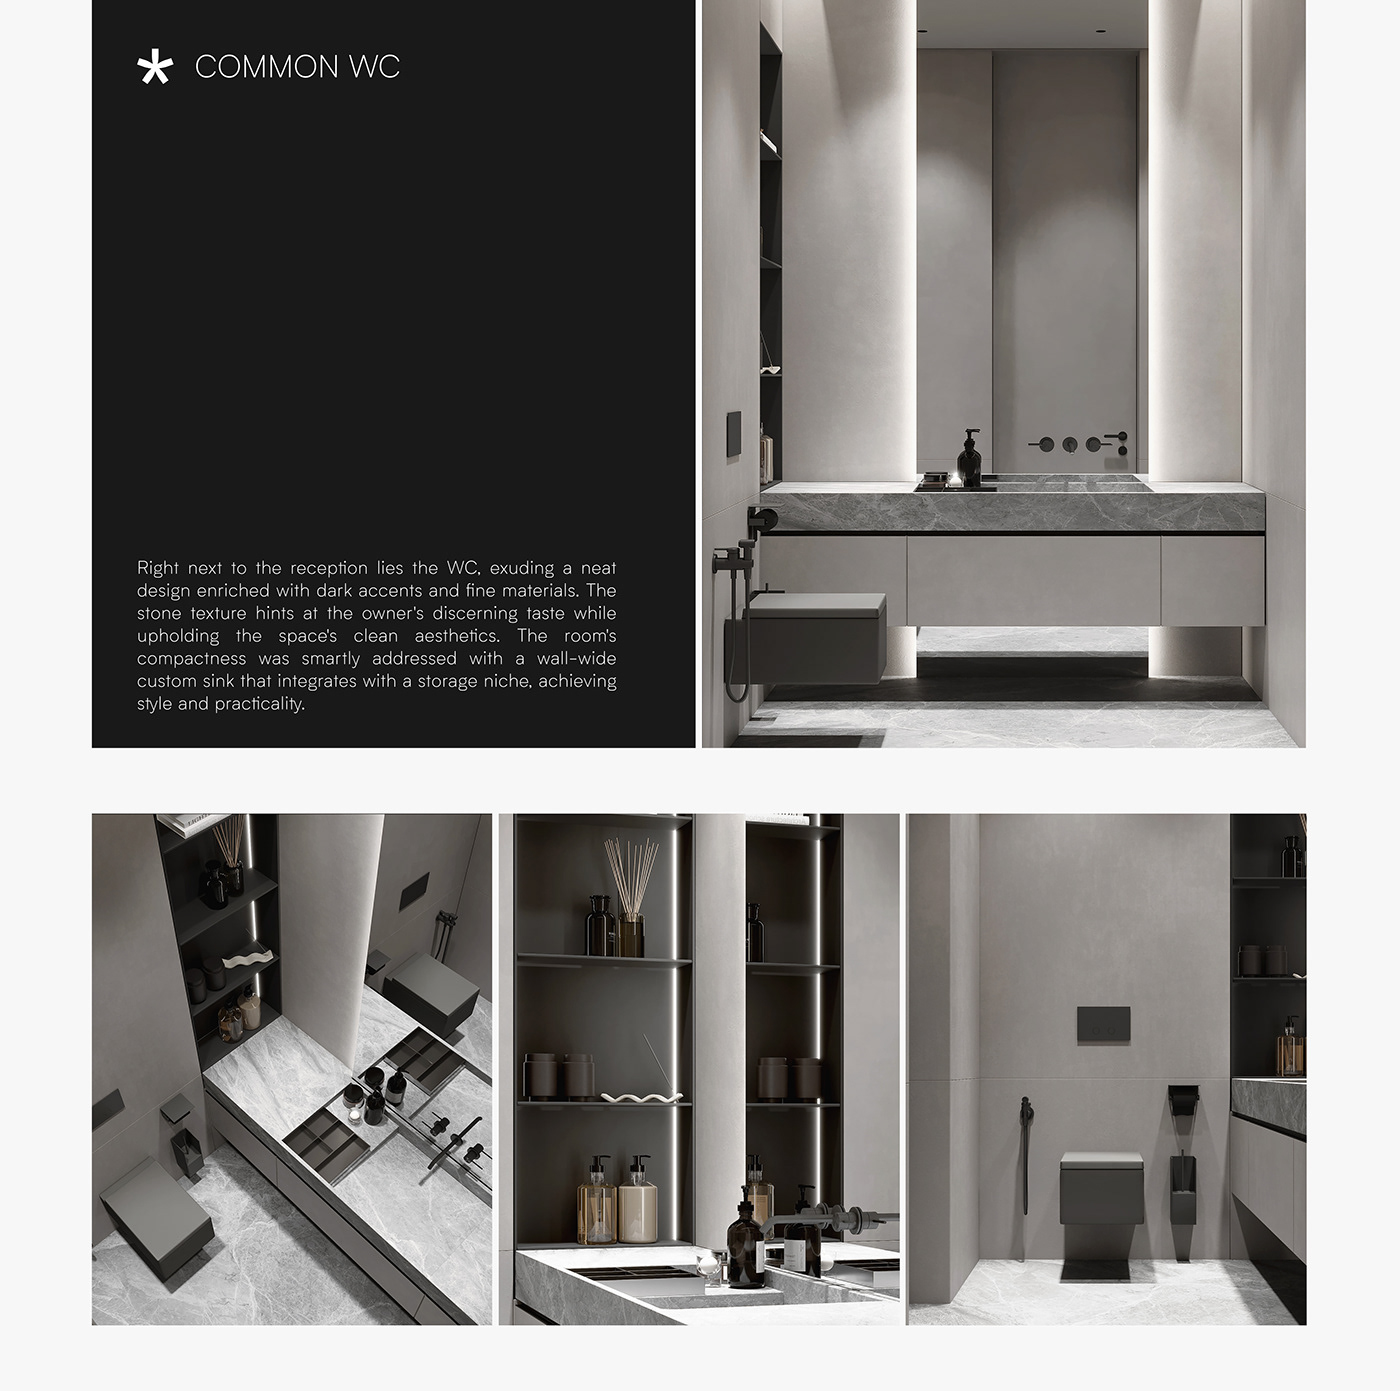 CGI interior design  rendering contemporary design interiors leqb home design Interior visualization 3ds max